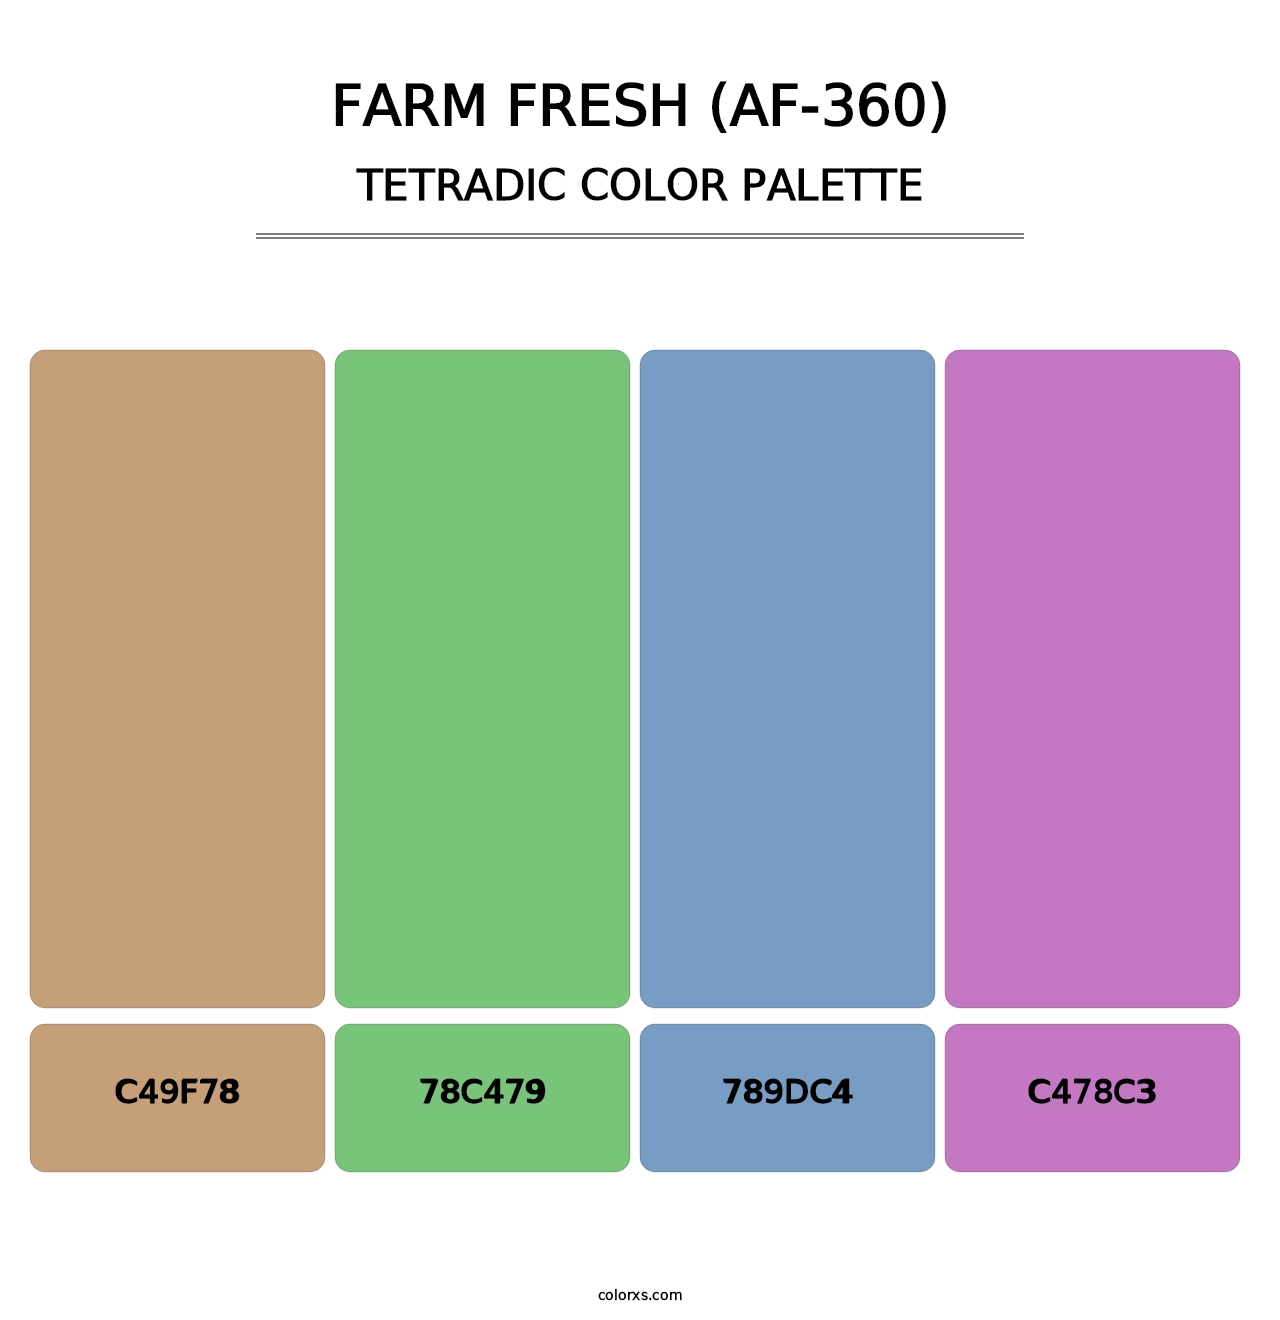 Farm Fresh (AF-360) - Tetradic Color Palette